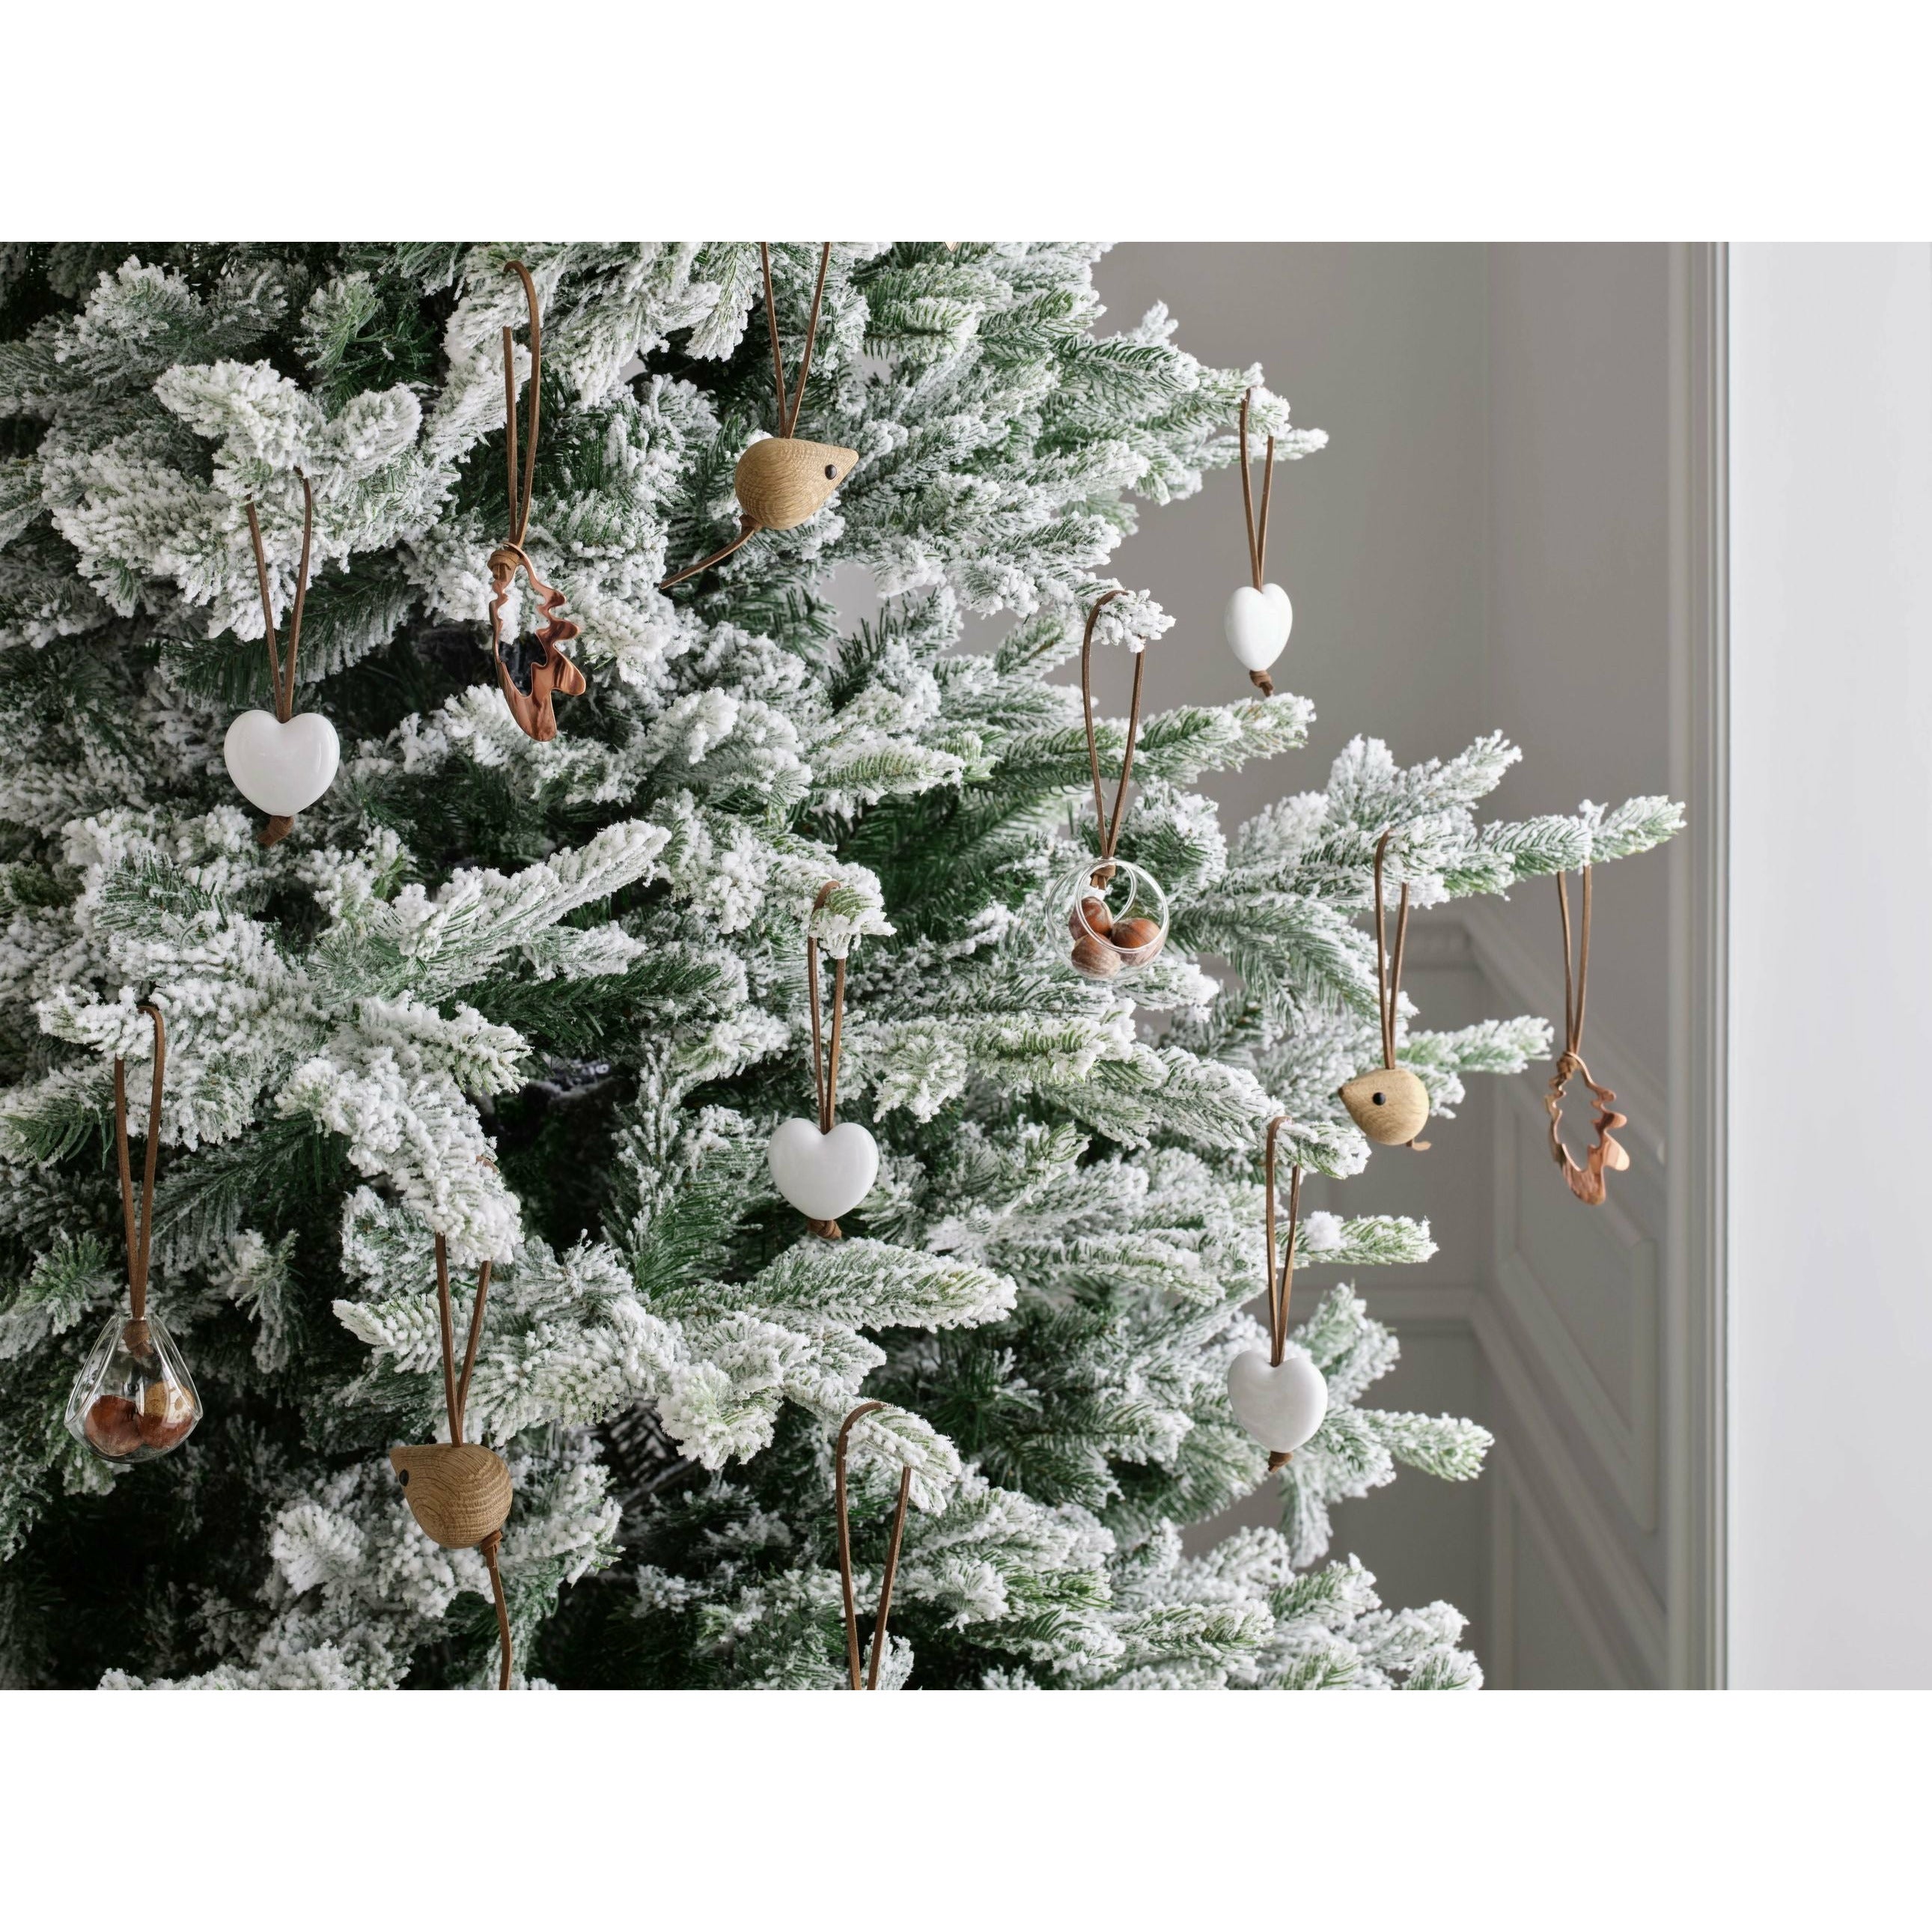 Rosendahl Nordische Märchen Korb Weihnachtsdekorationen